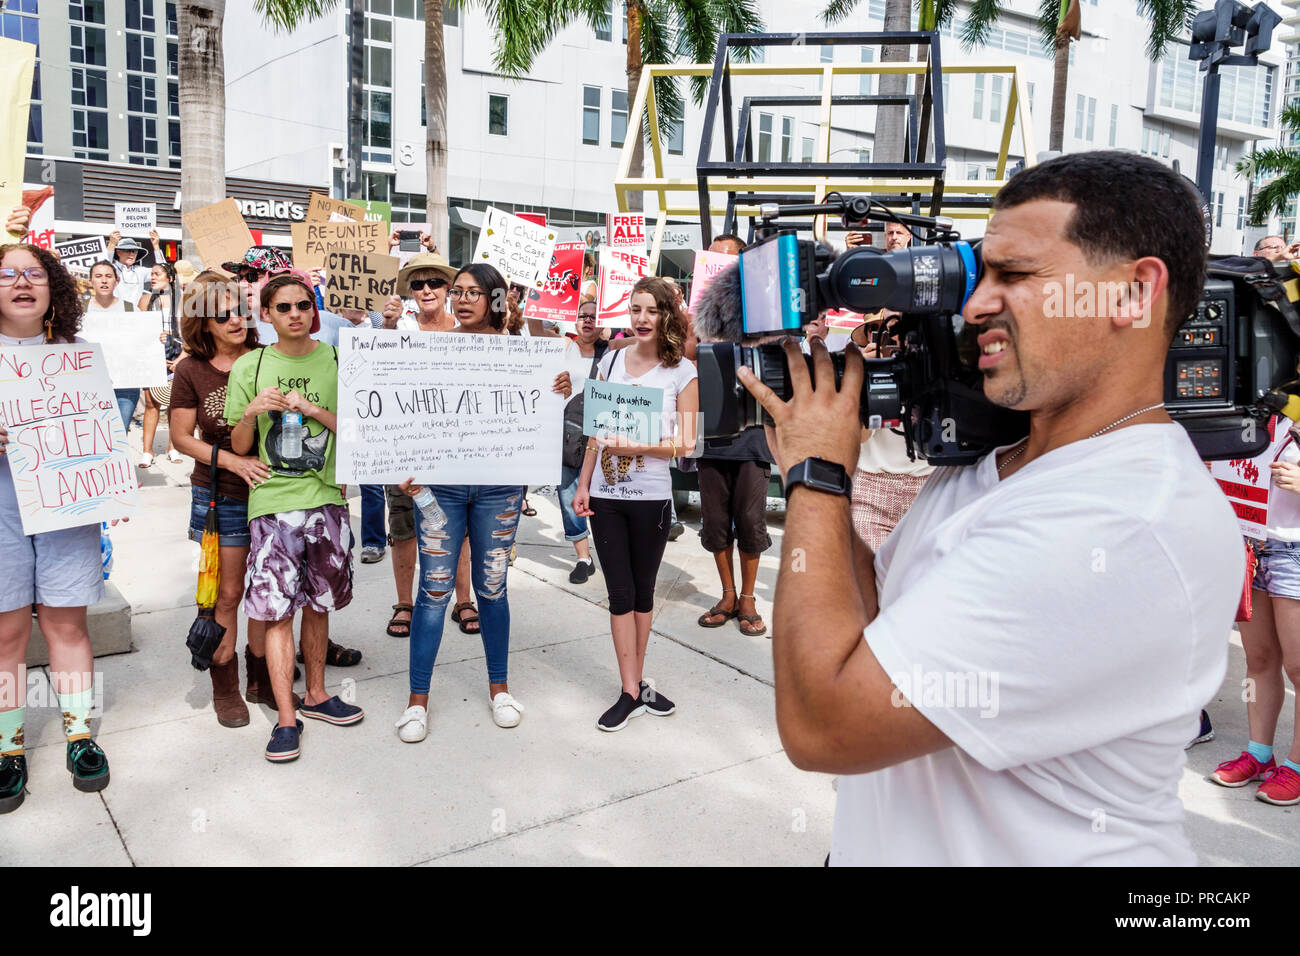 Miami Florida, Demonstration demonstriert Protest protestierend, Familien gehören zusammen Freie Kinder illegale Einwanderung, Medien, digitales Video Videocam c Stockfoto